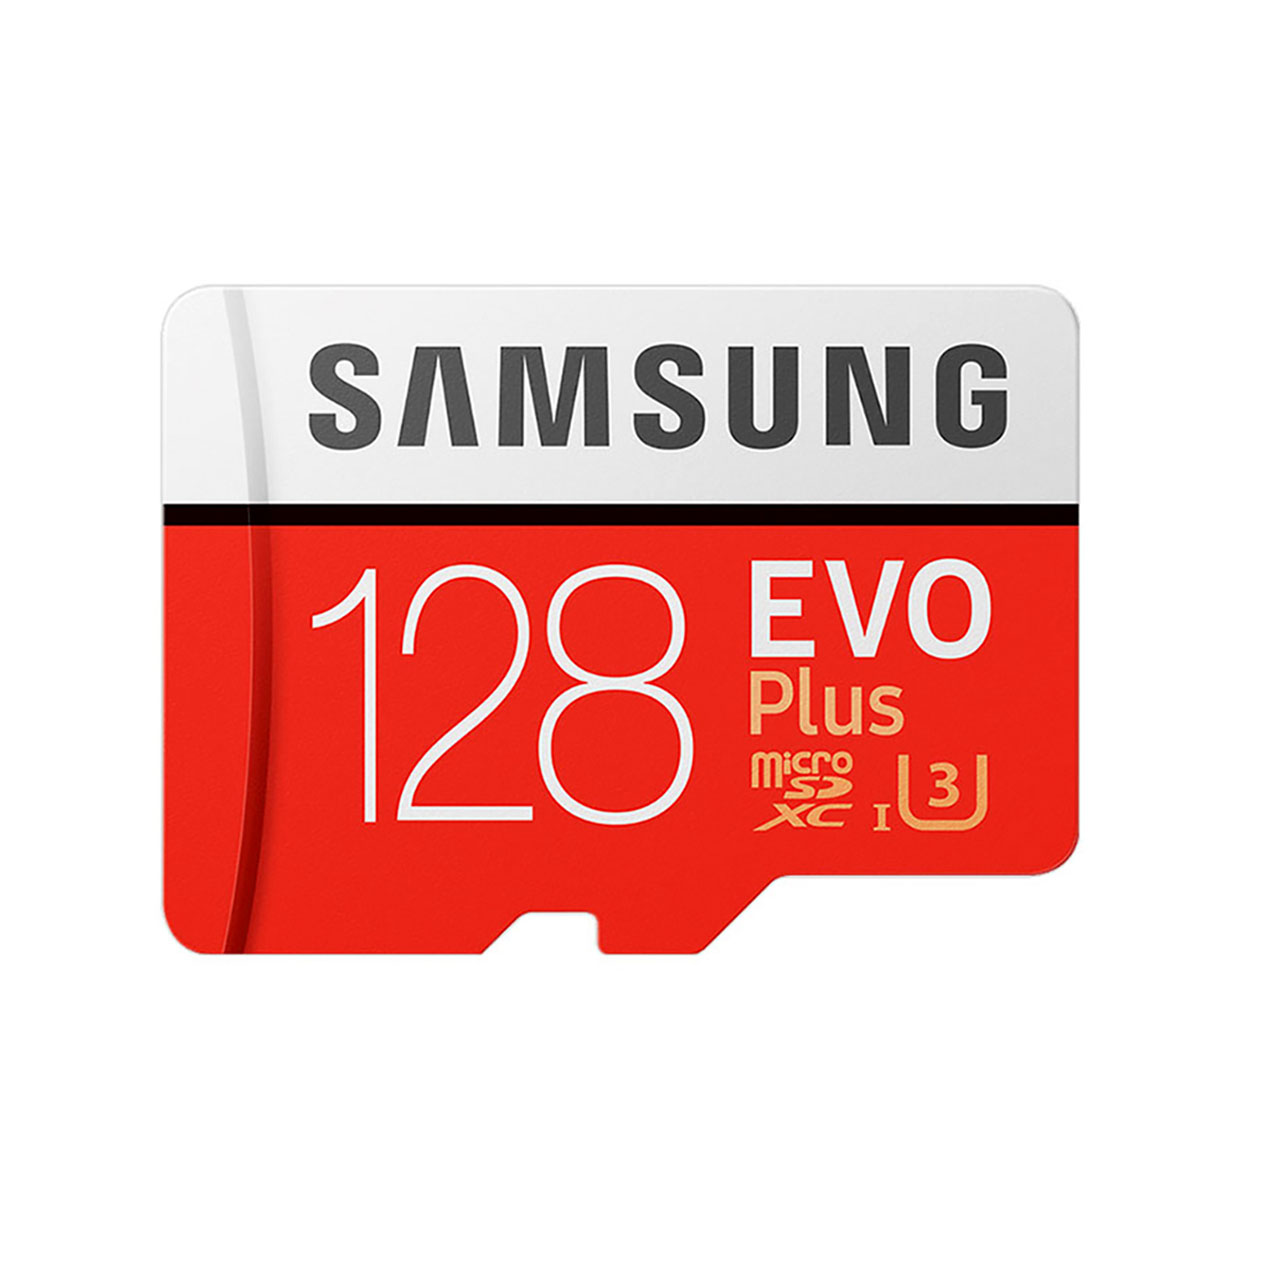 کارت حافظه microSDXC مدل Evo Plus کلاس 10 استاندارد UHS-I U3 سرعت 100MBps ظرفیت 128 گیگابایت به همراه آداپتور SD